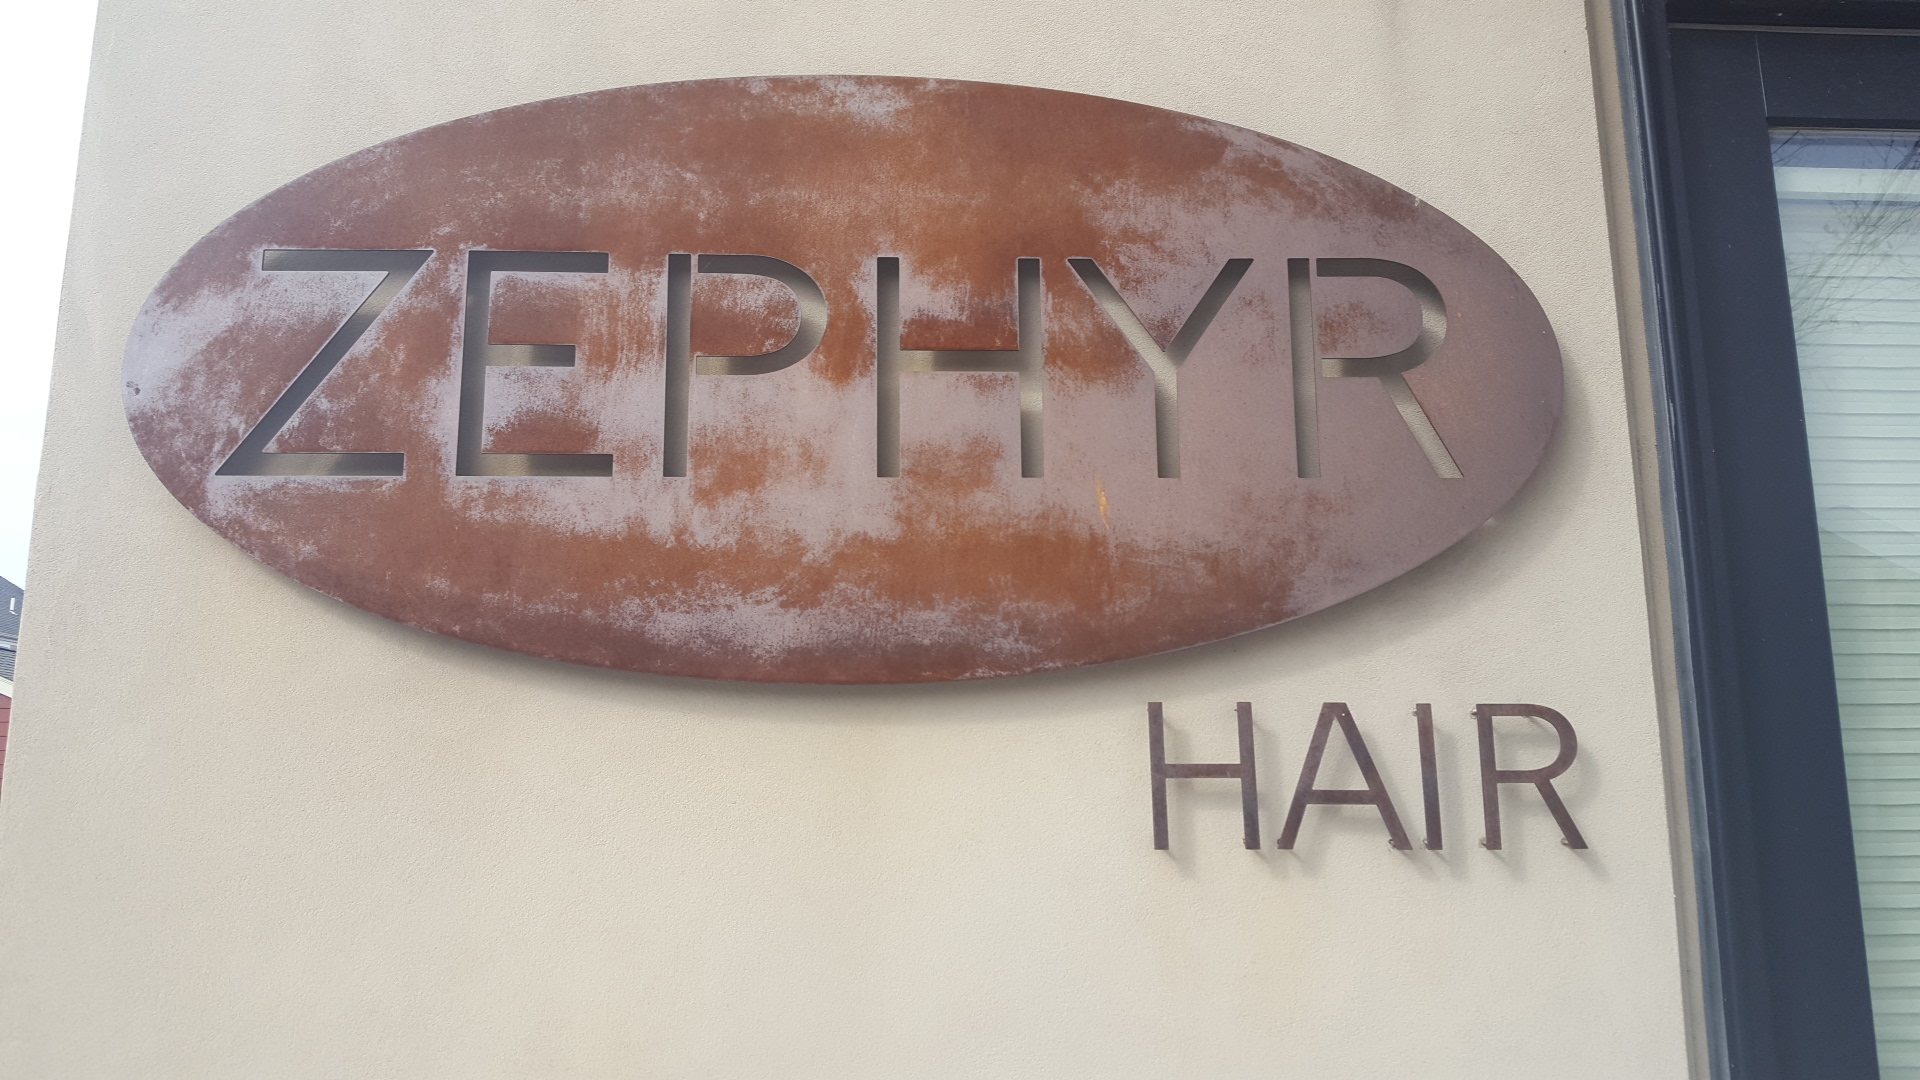 Zephyr Hair